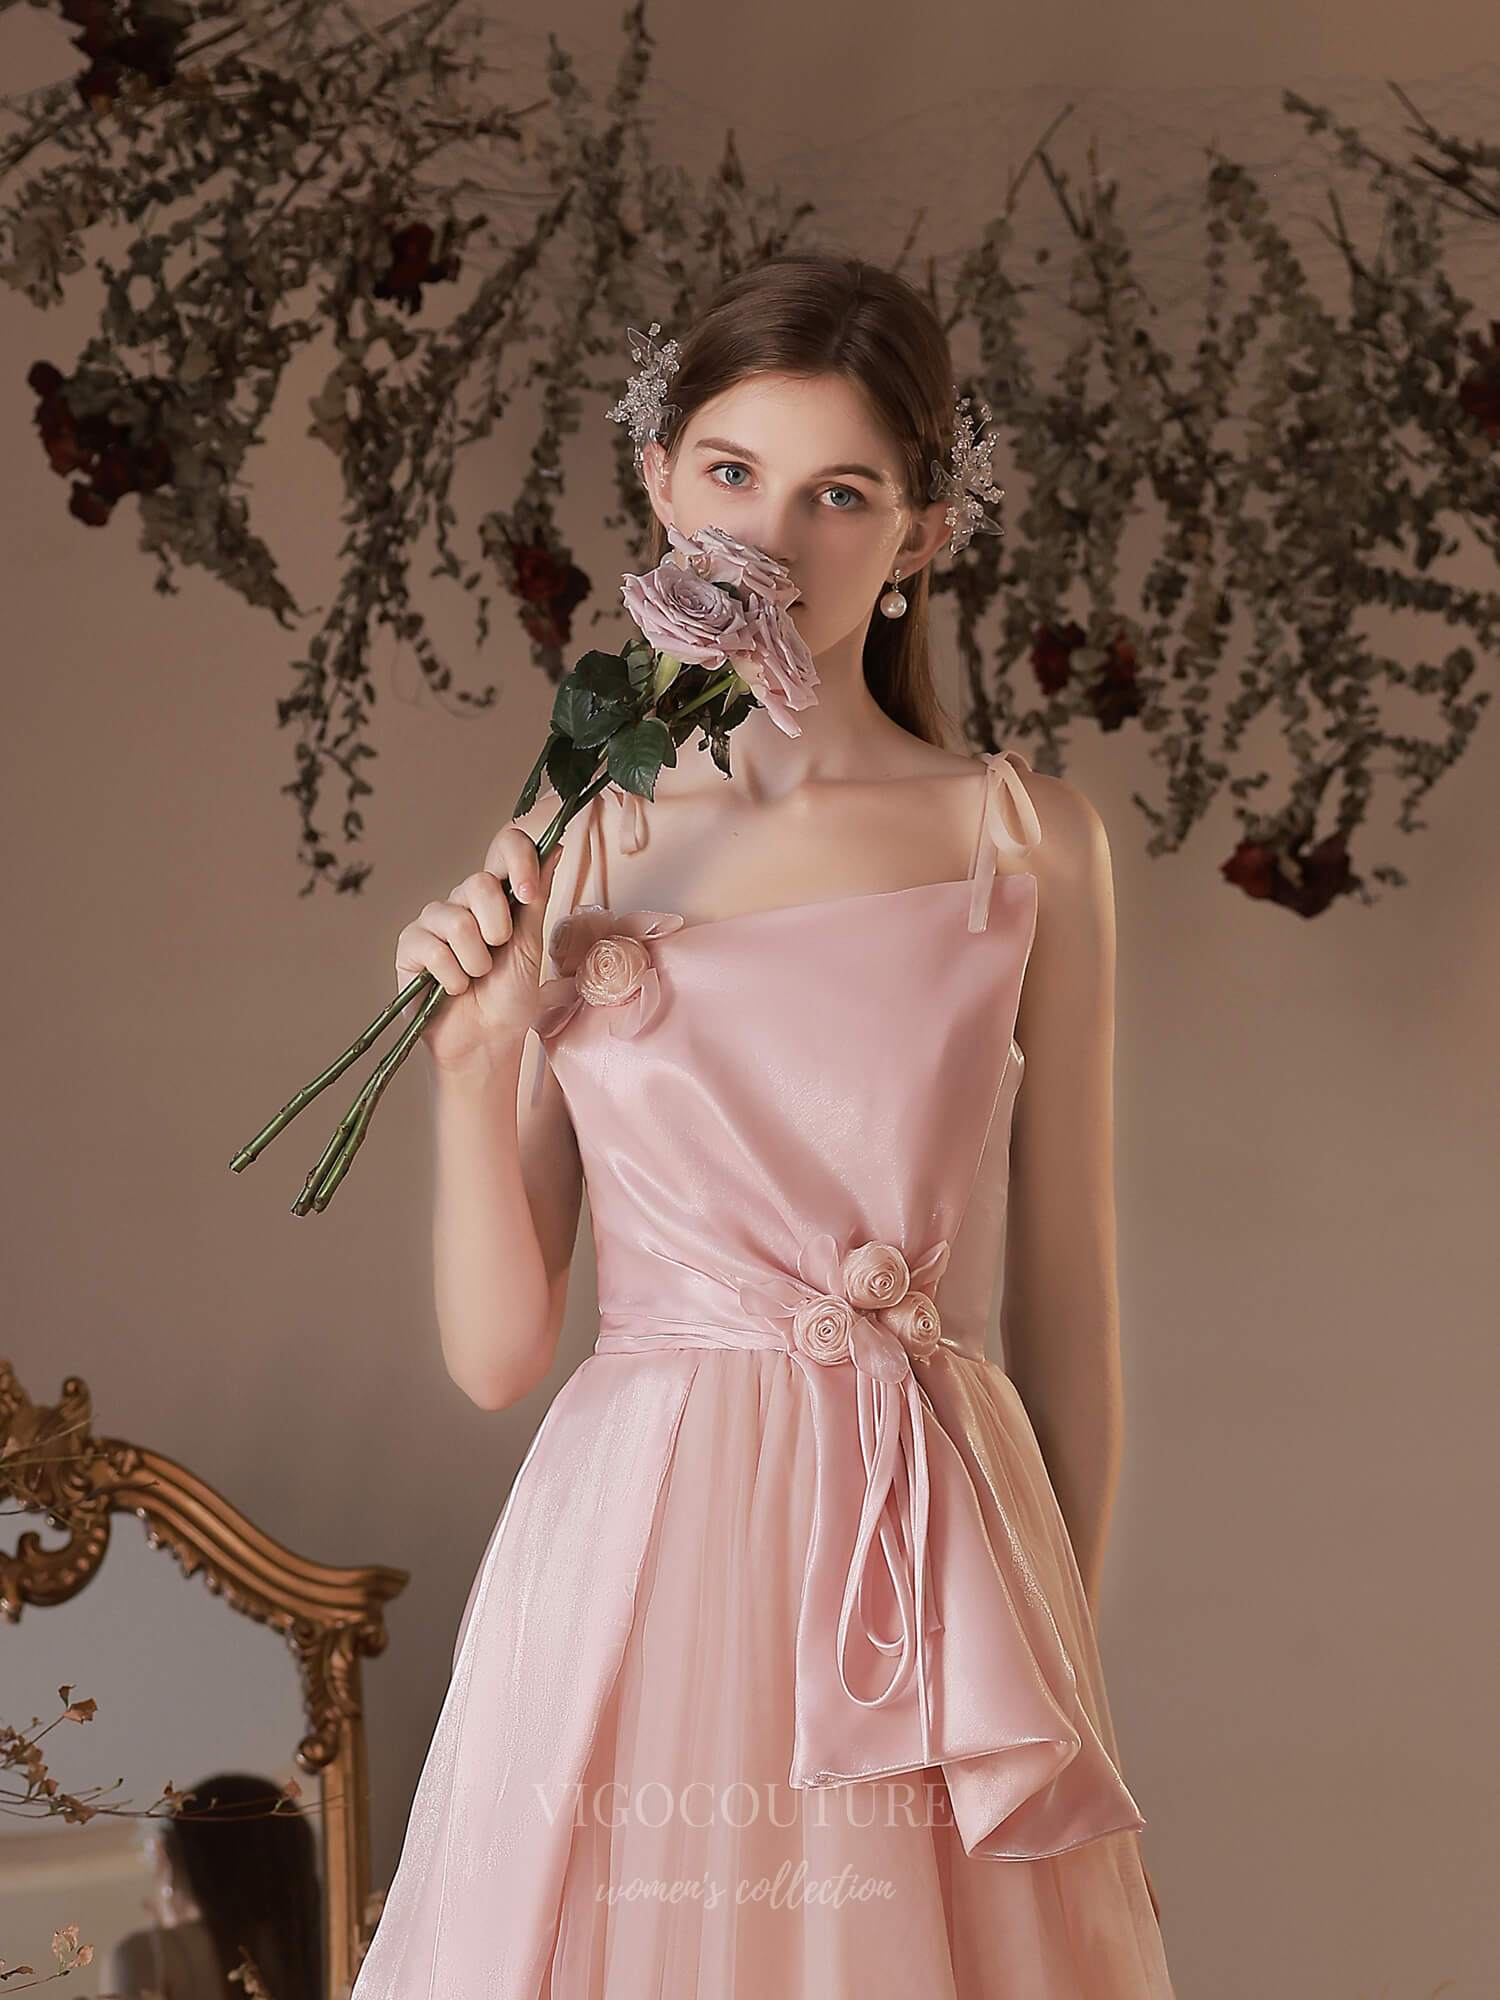 vigocouture-Blush Tulle Spaghetti Strap Floral Prom Dress 20737-Prom Dresses-vigocouture-